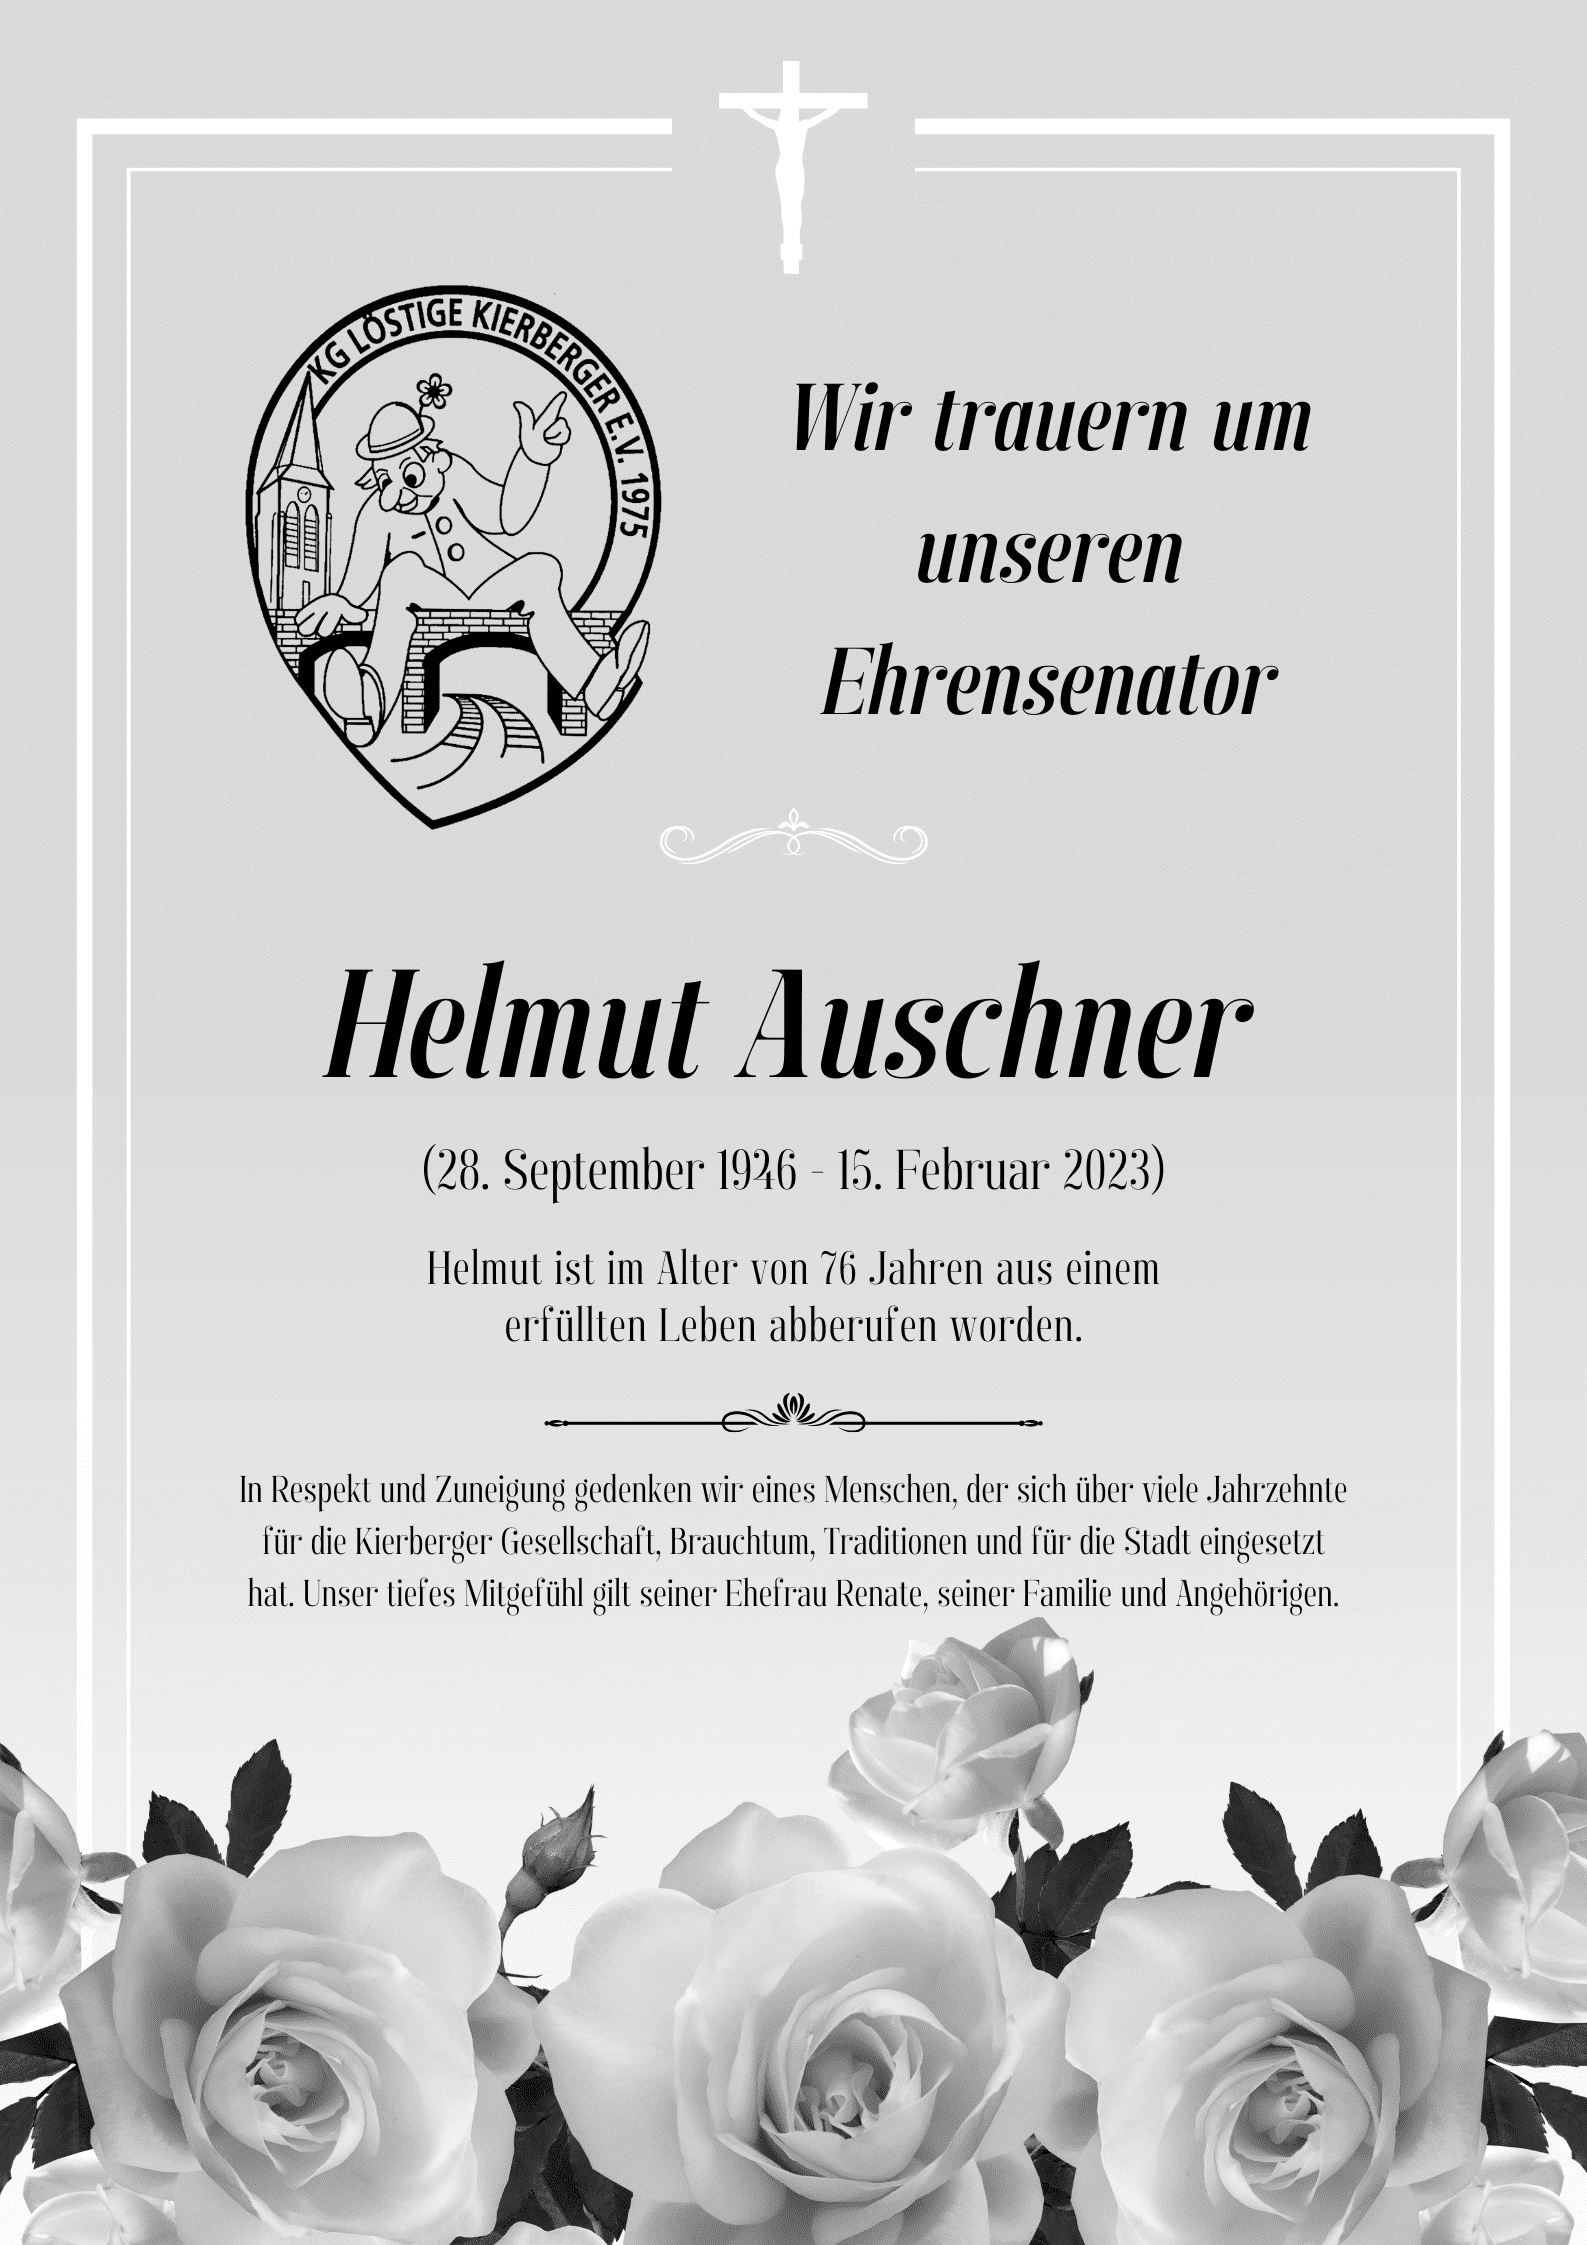 Wir trauern um unseren Ehrensenator Helmut Auschner